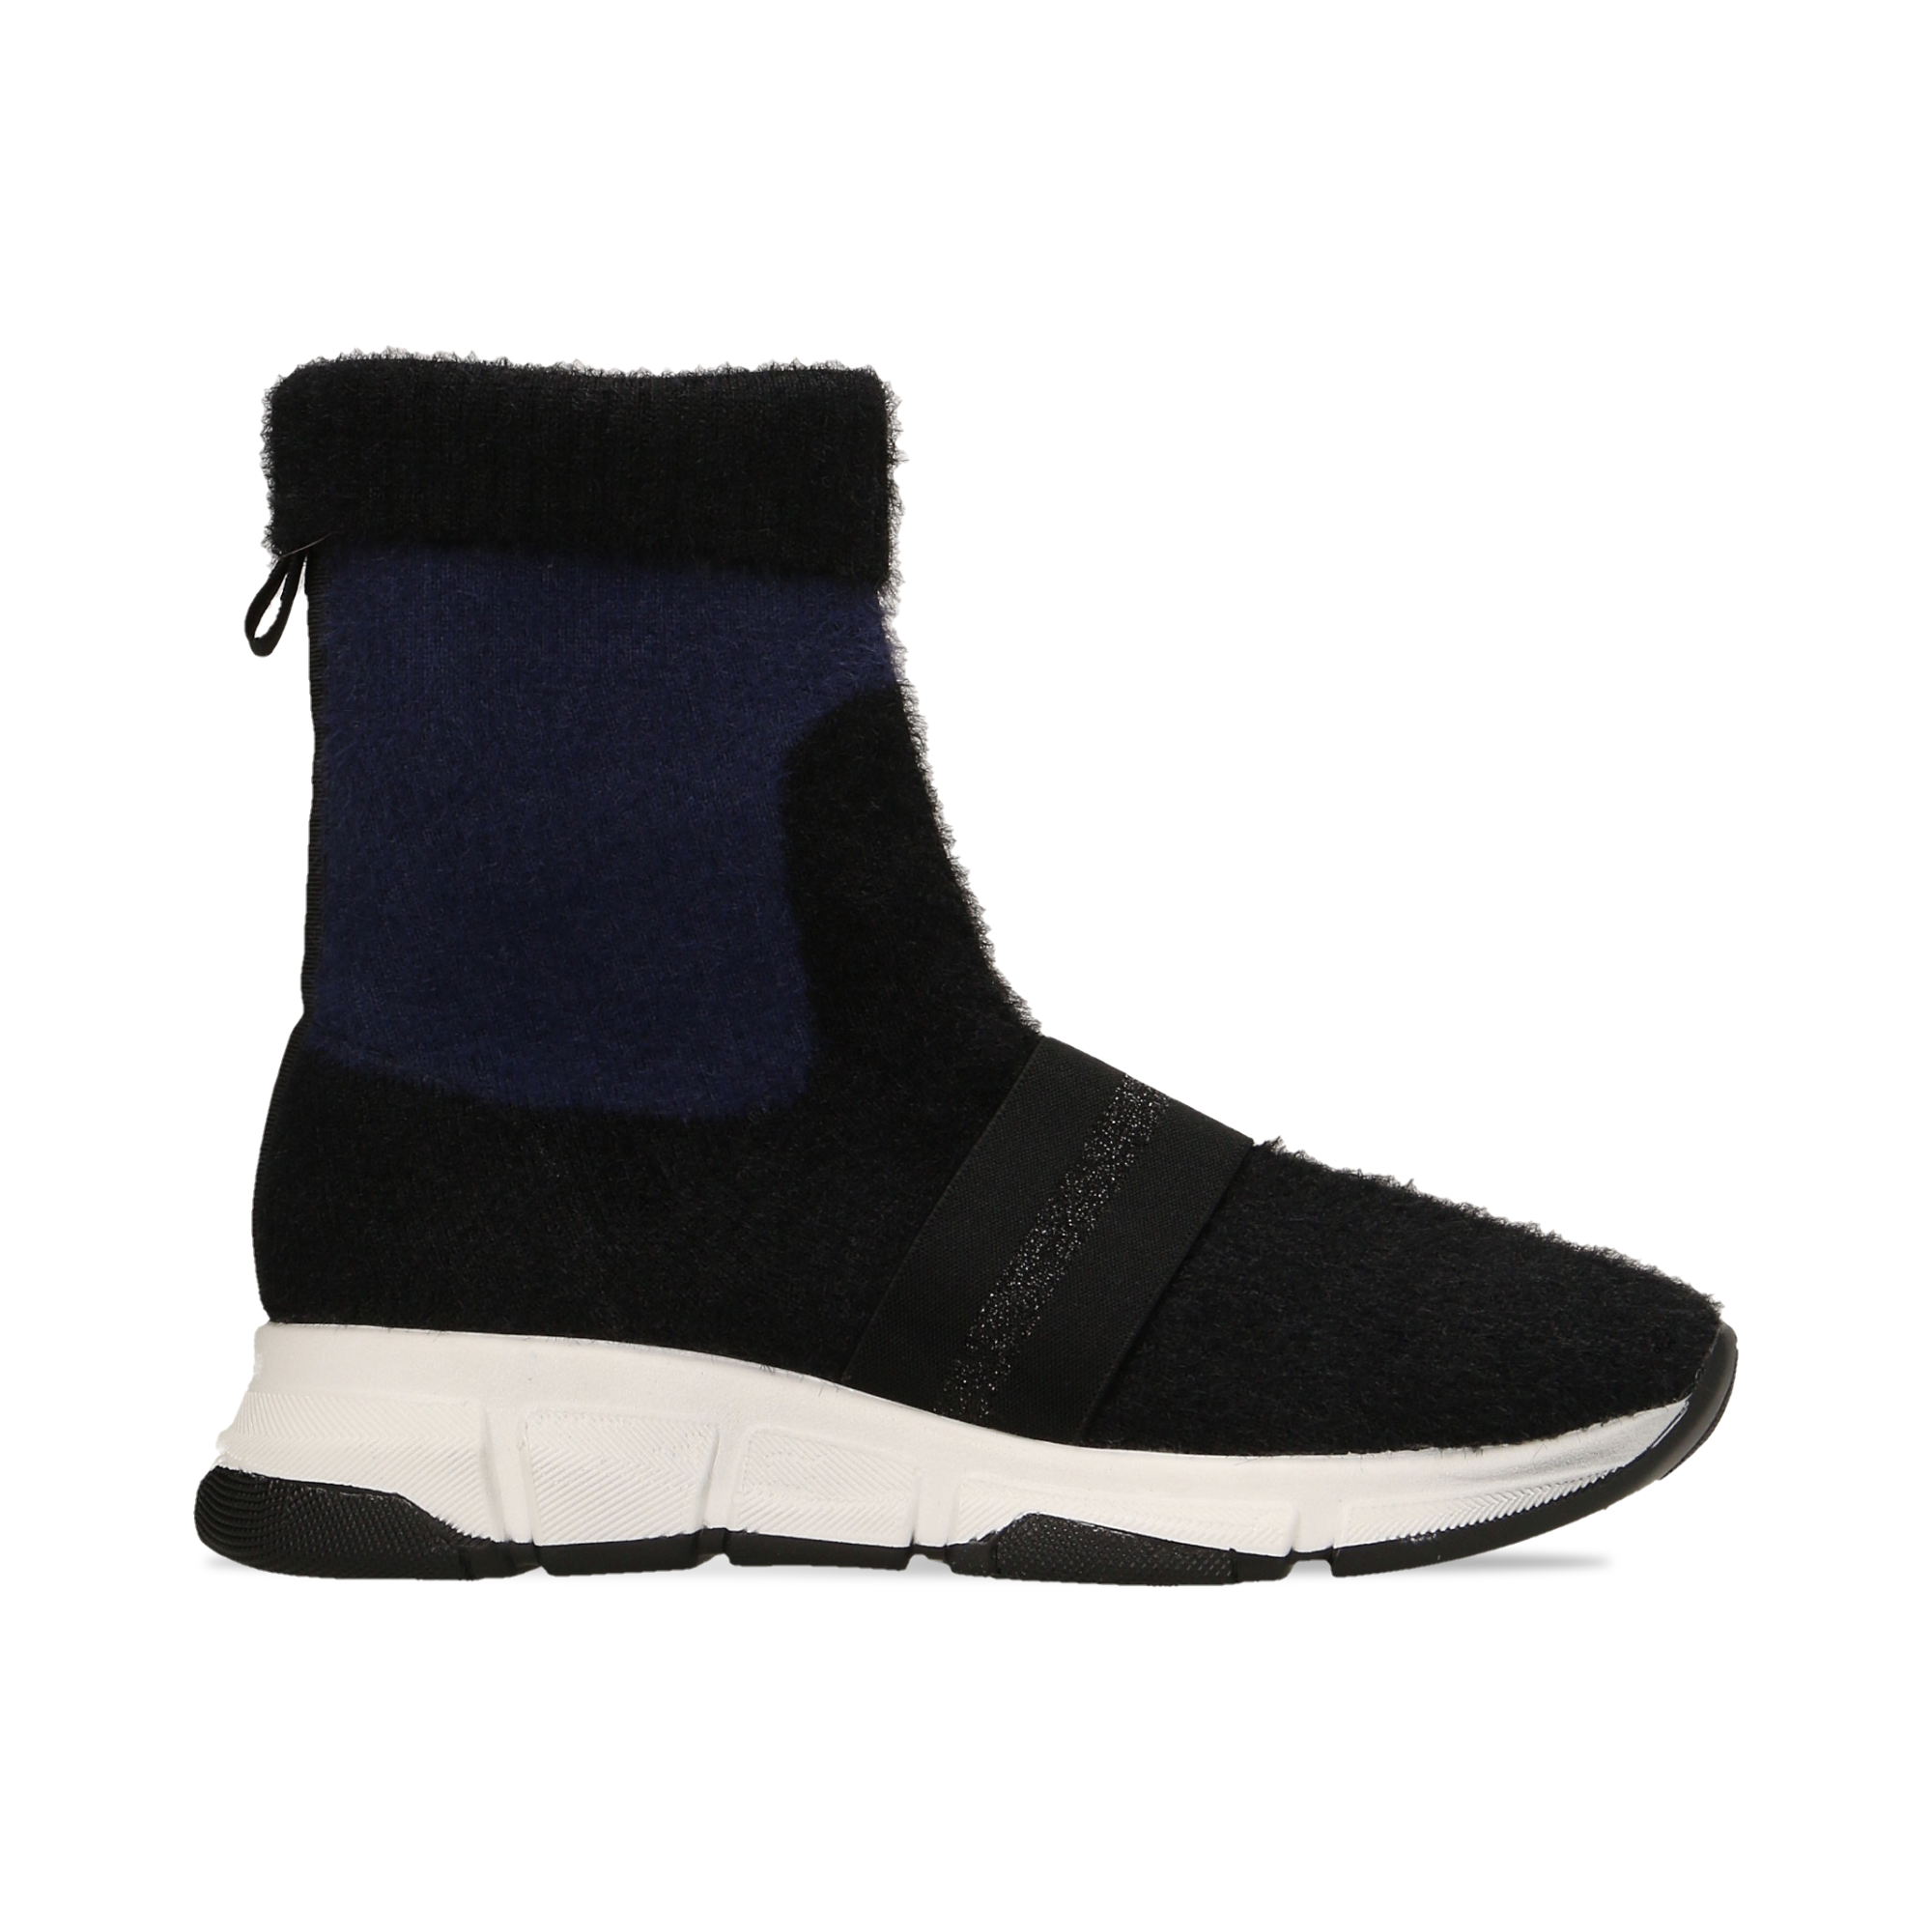 Sneakers nero-blu sock boots con suola in gomma bianca